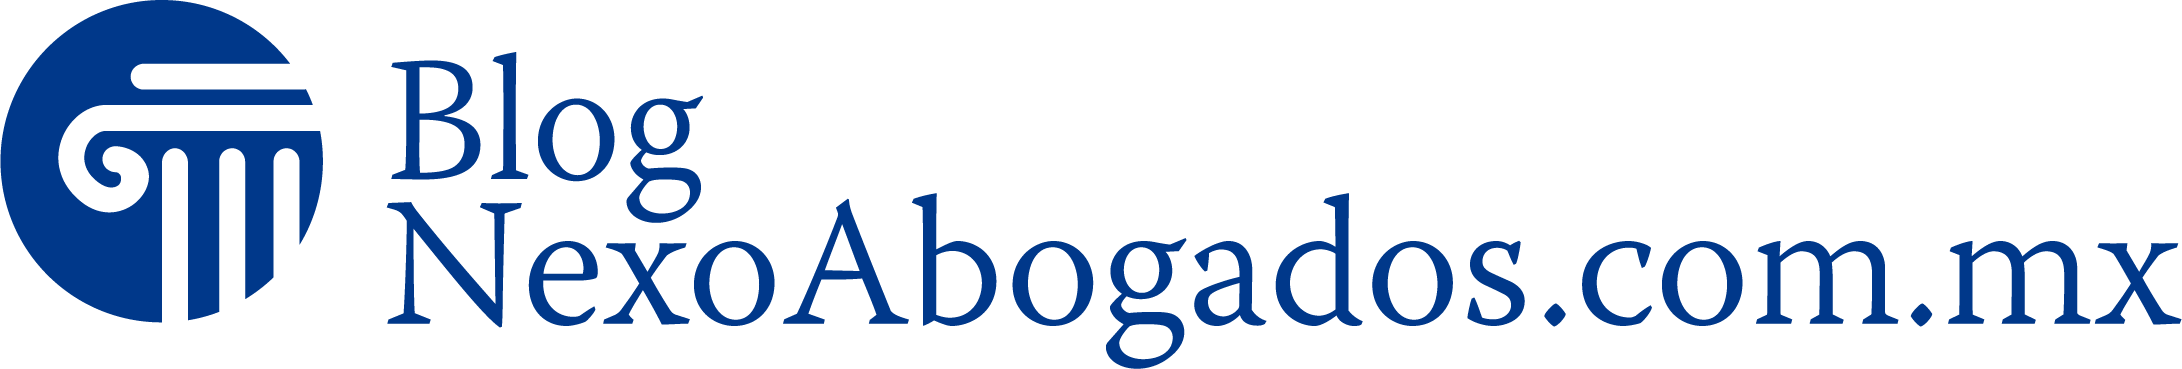 Temas legales en lenguaje simple – Blog NexoAbogados